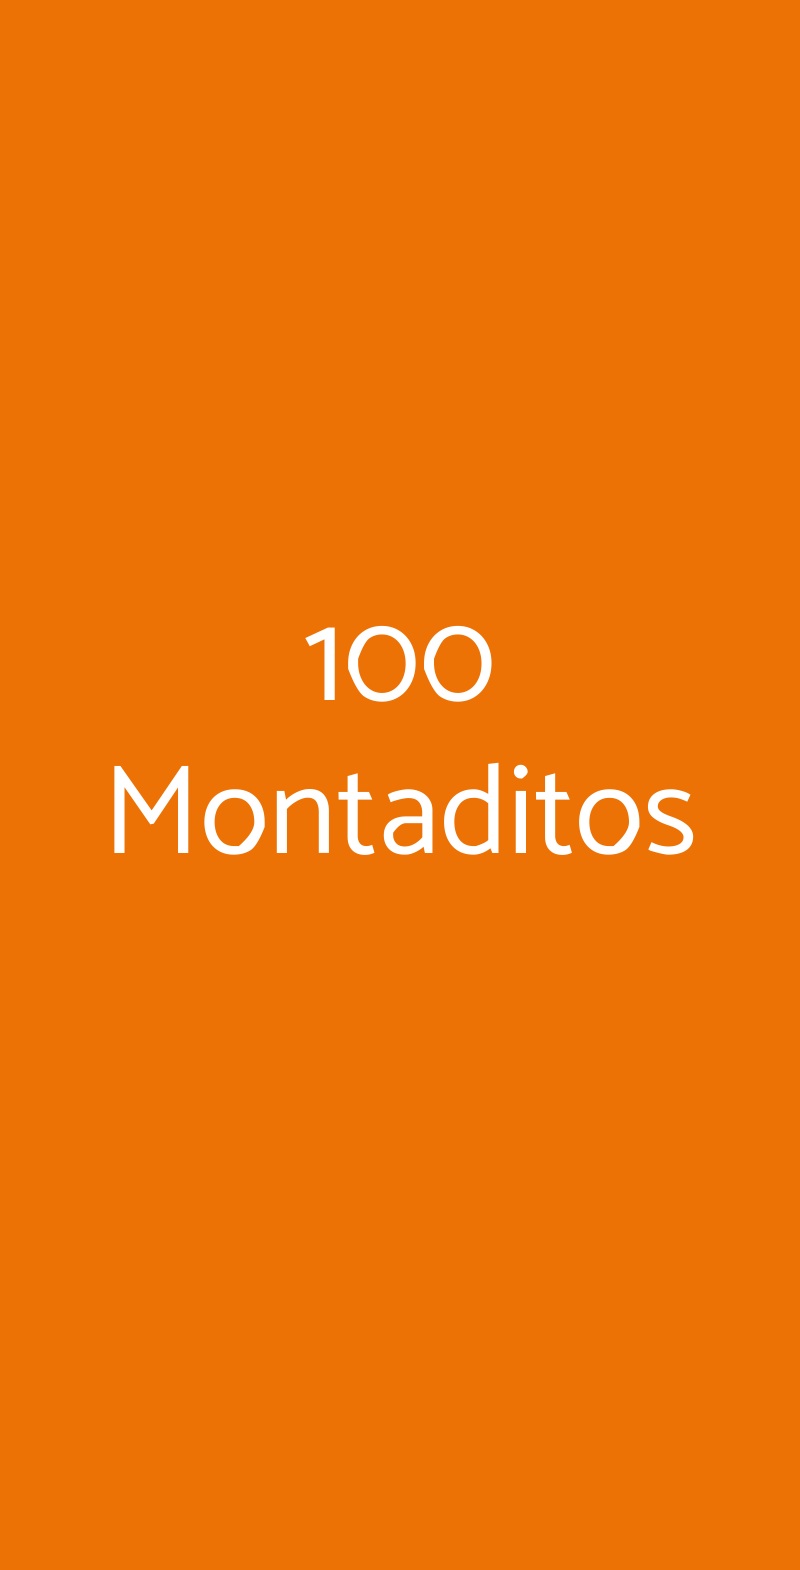 100 Montaditos Roma menù 1 pagina